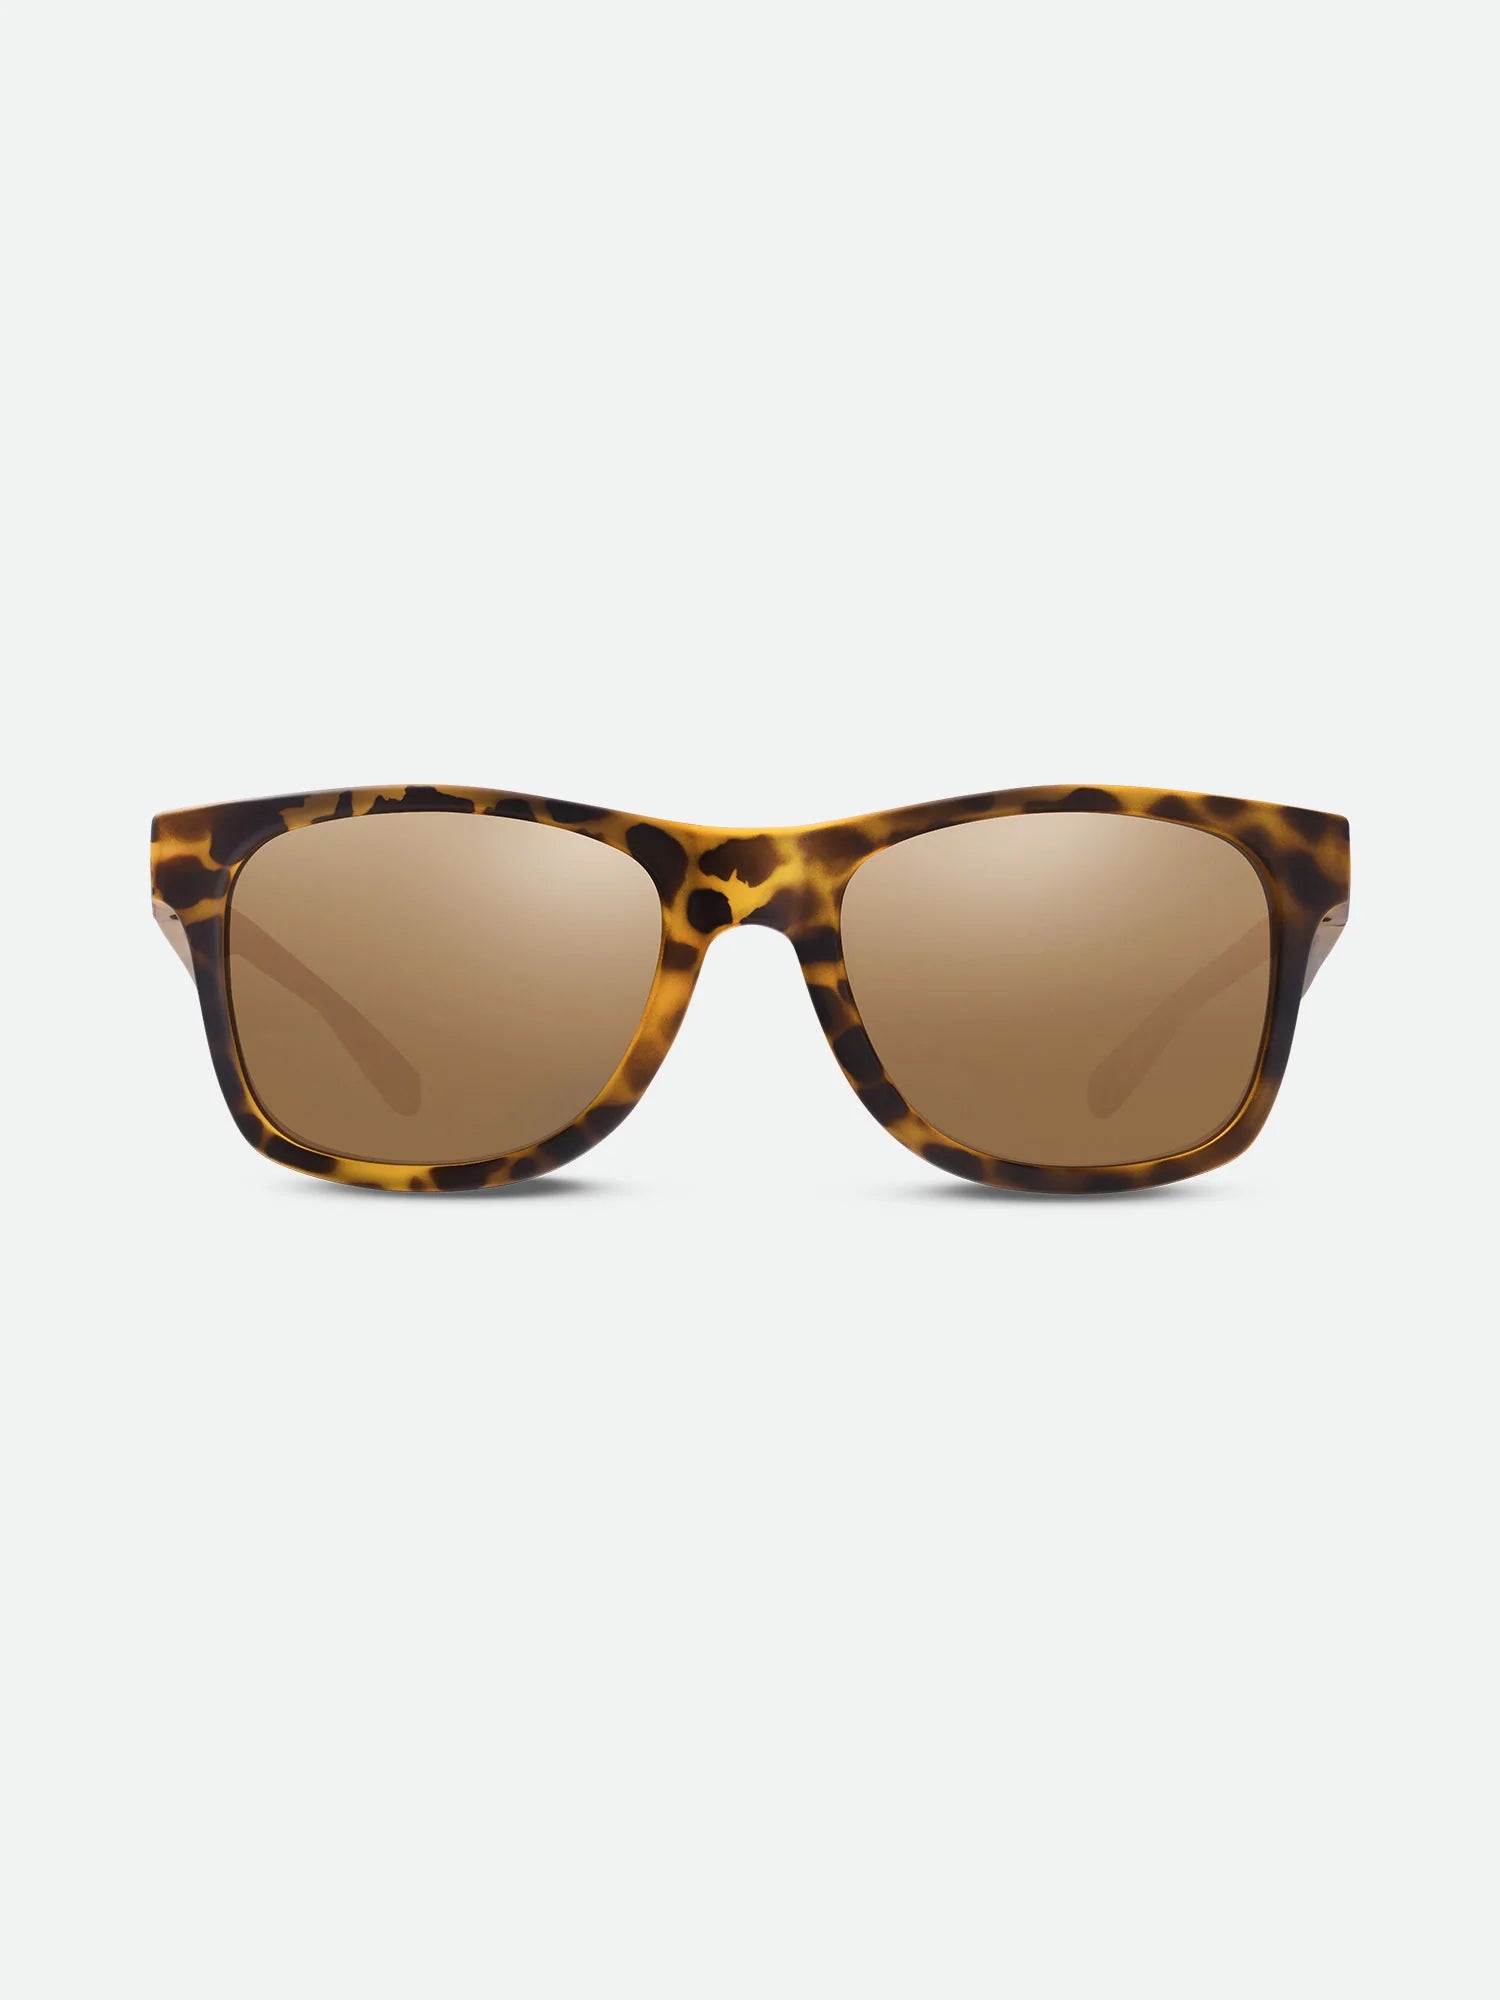 แว่นดําใส่วิ่ง | Adventure Polarized Sunglasses